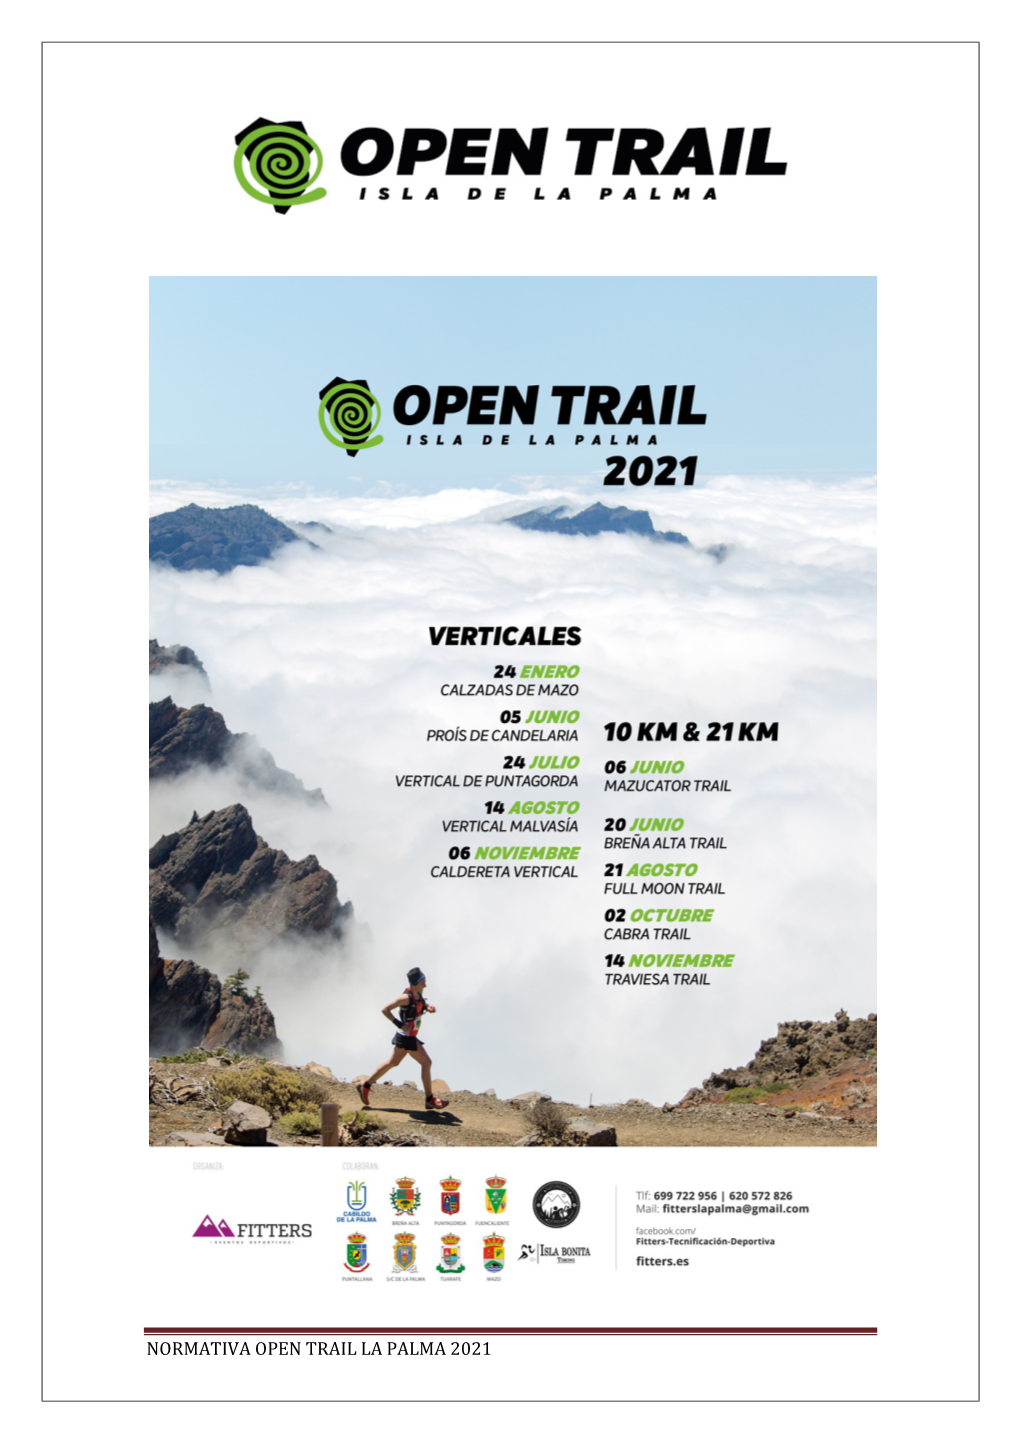 Normativa Open Trail La Palma 2021